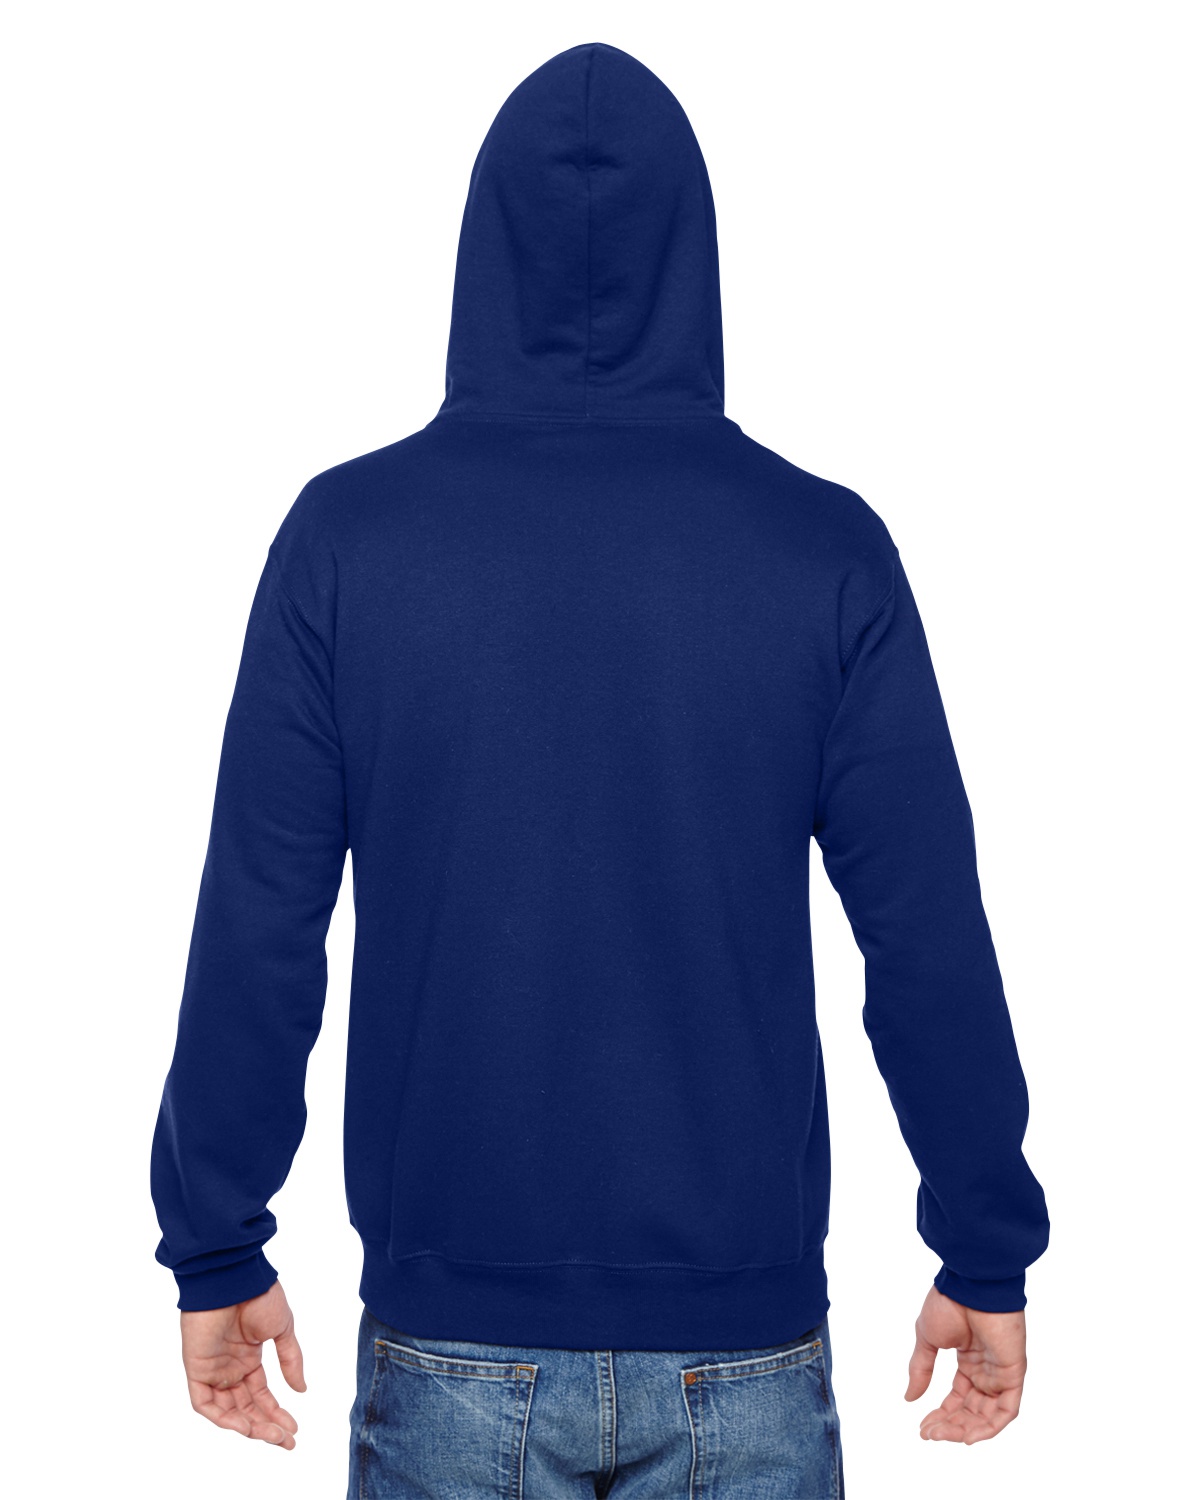 'Fruit of the Loom SF73R Adult SofSpun Full-Zip Hooded Sweatshirt'